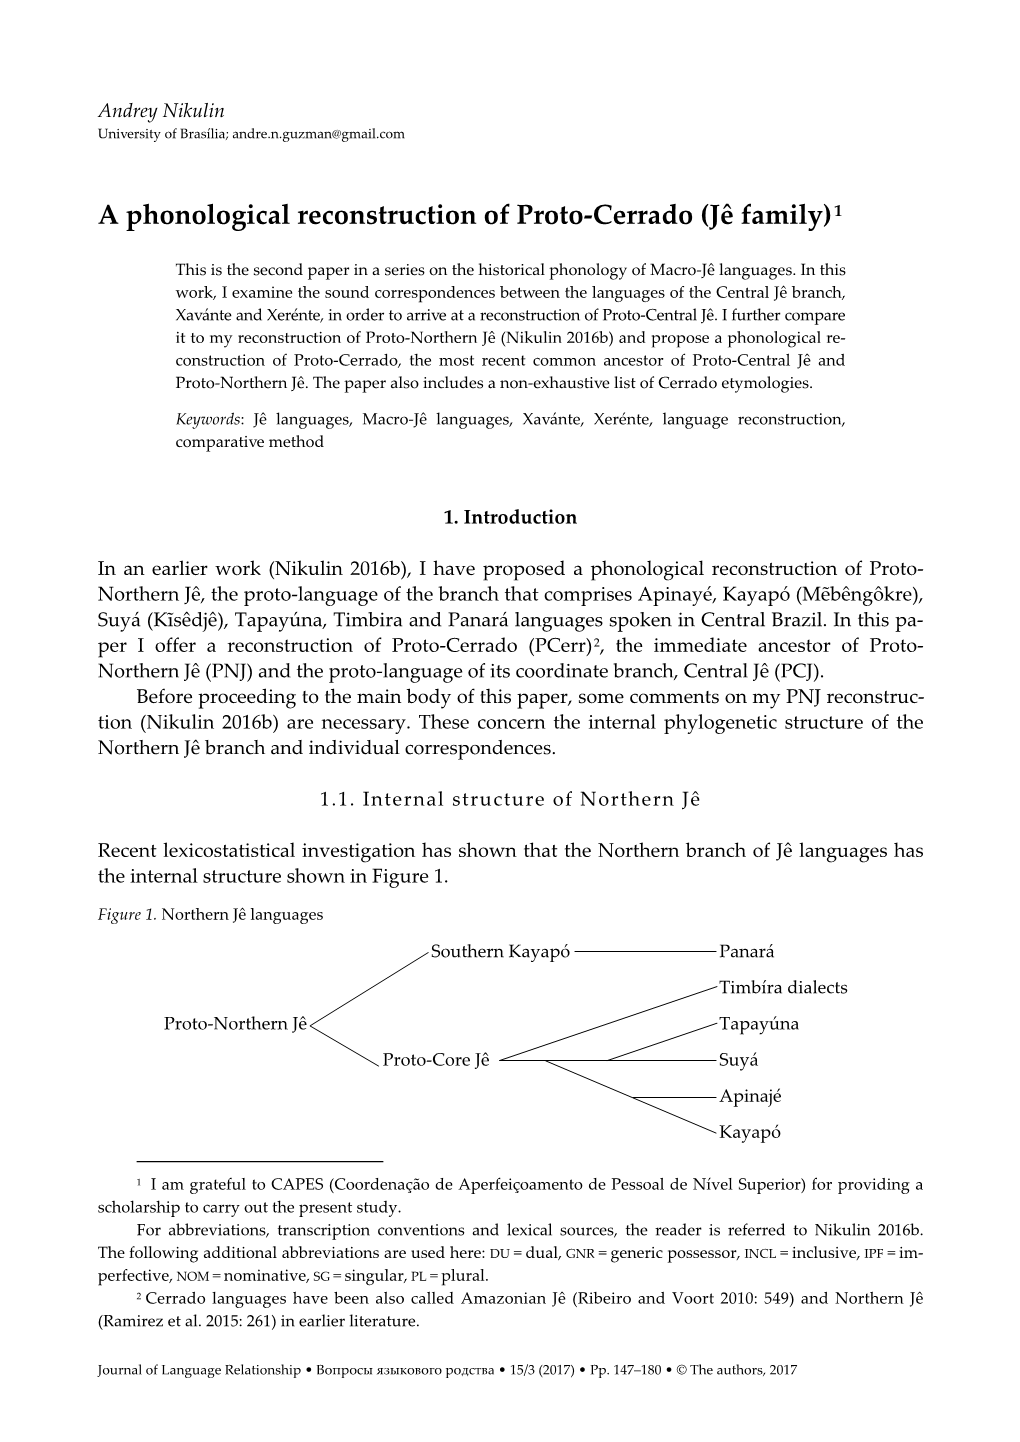 A Phonological Reconstruction of Proto-Cerrado (Jê Family) 1